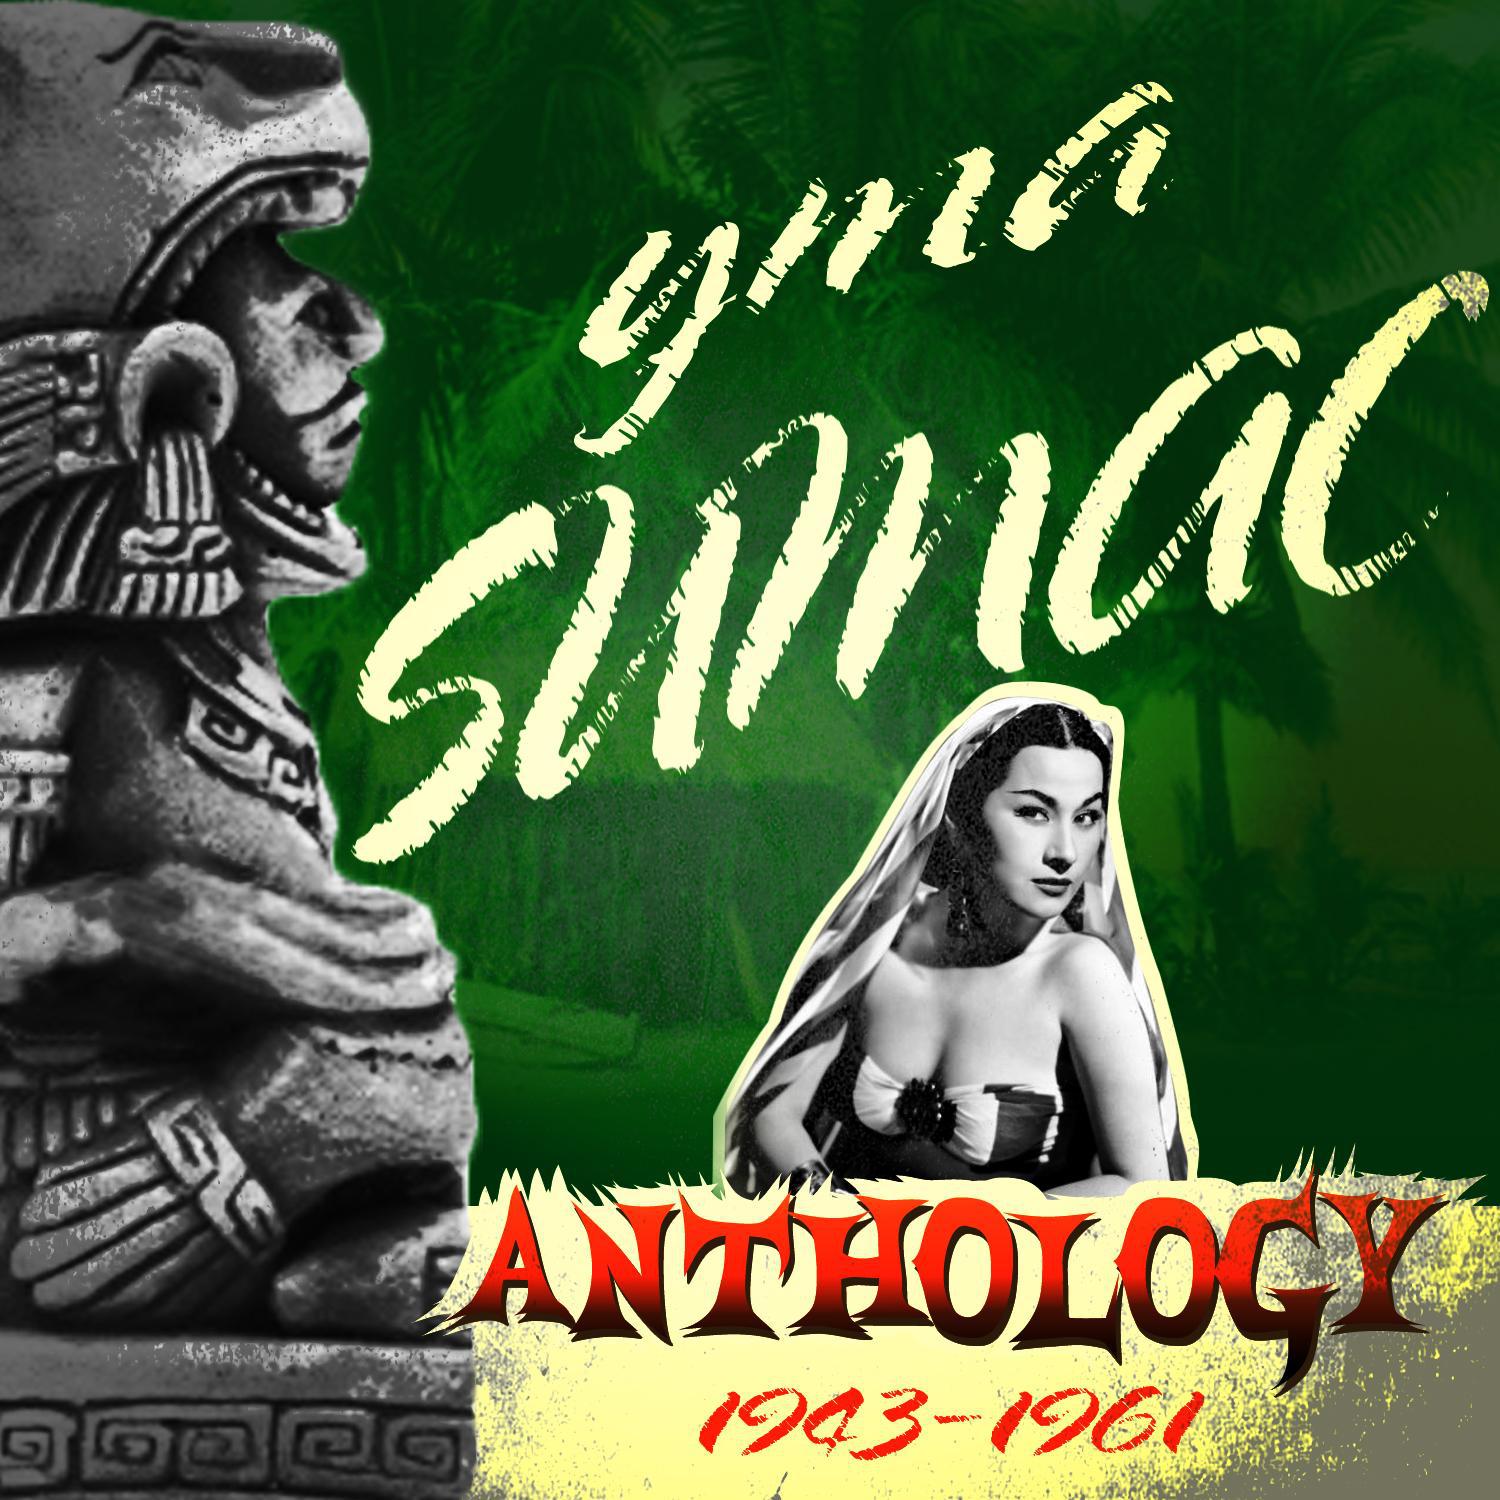 Anthology 1943-1961专辑